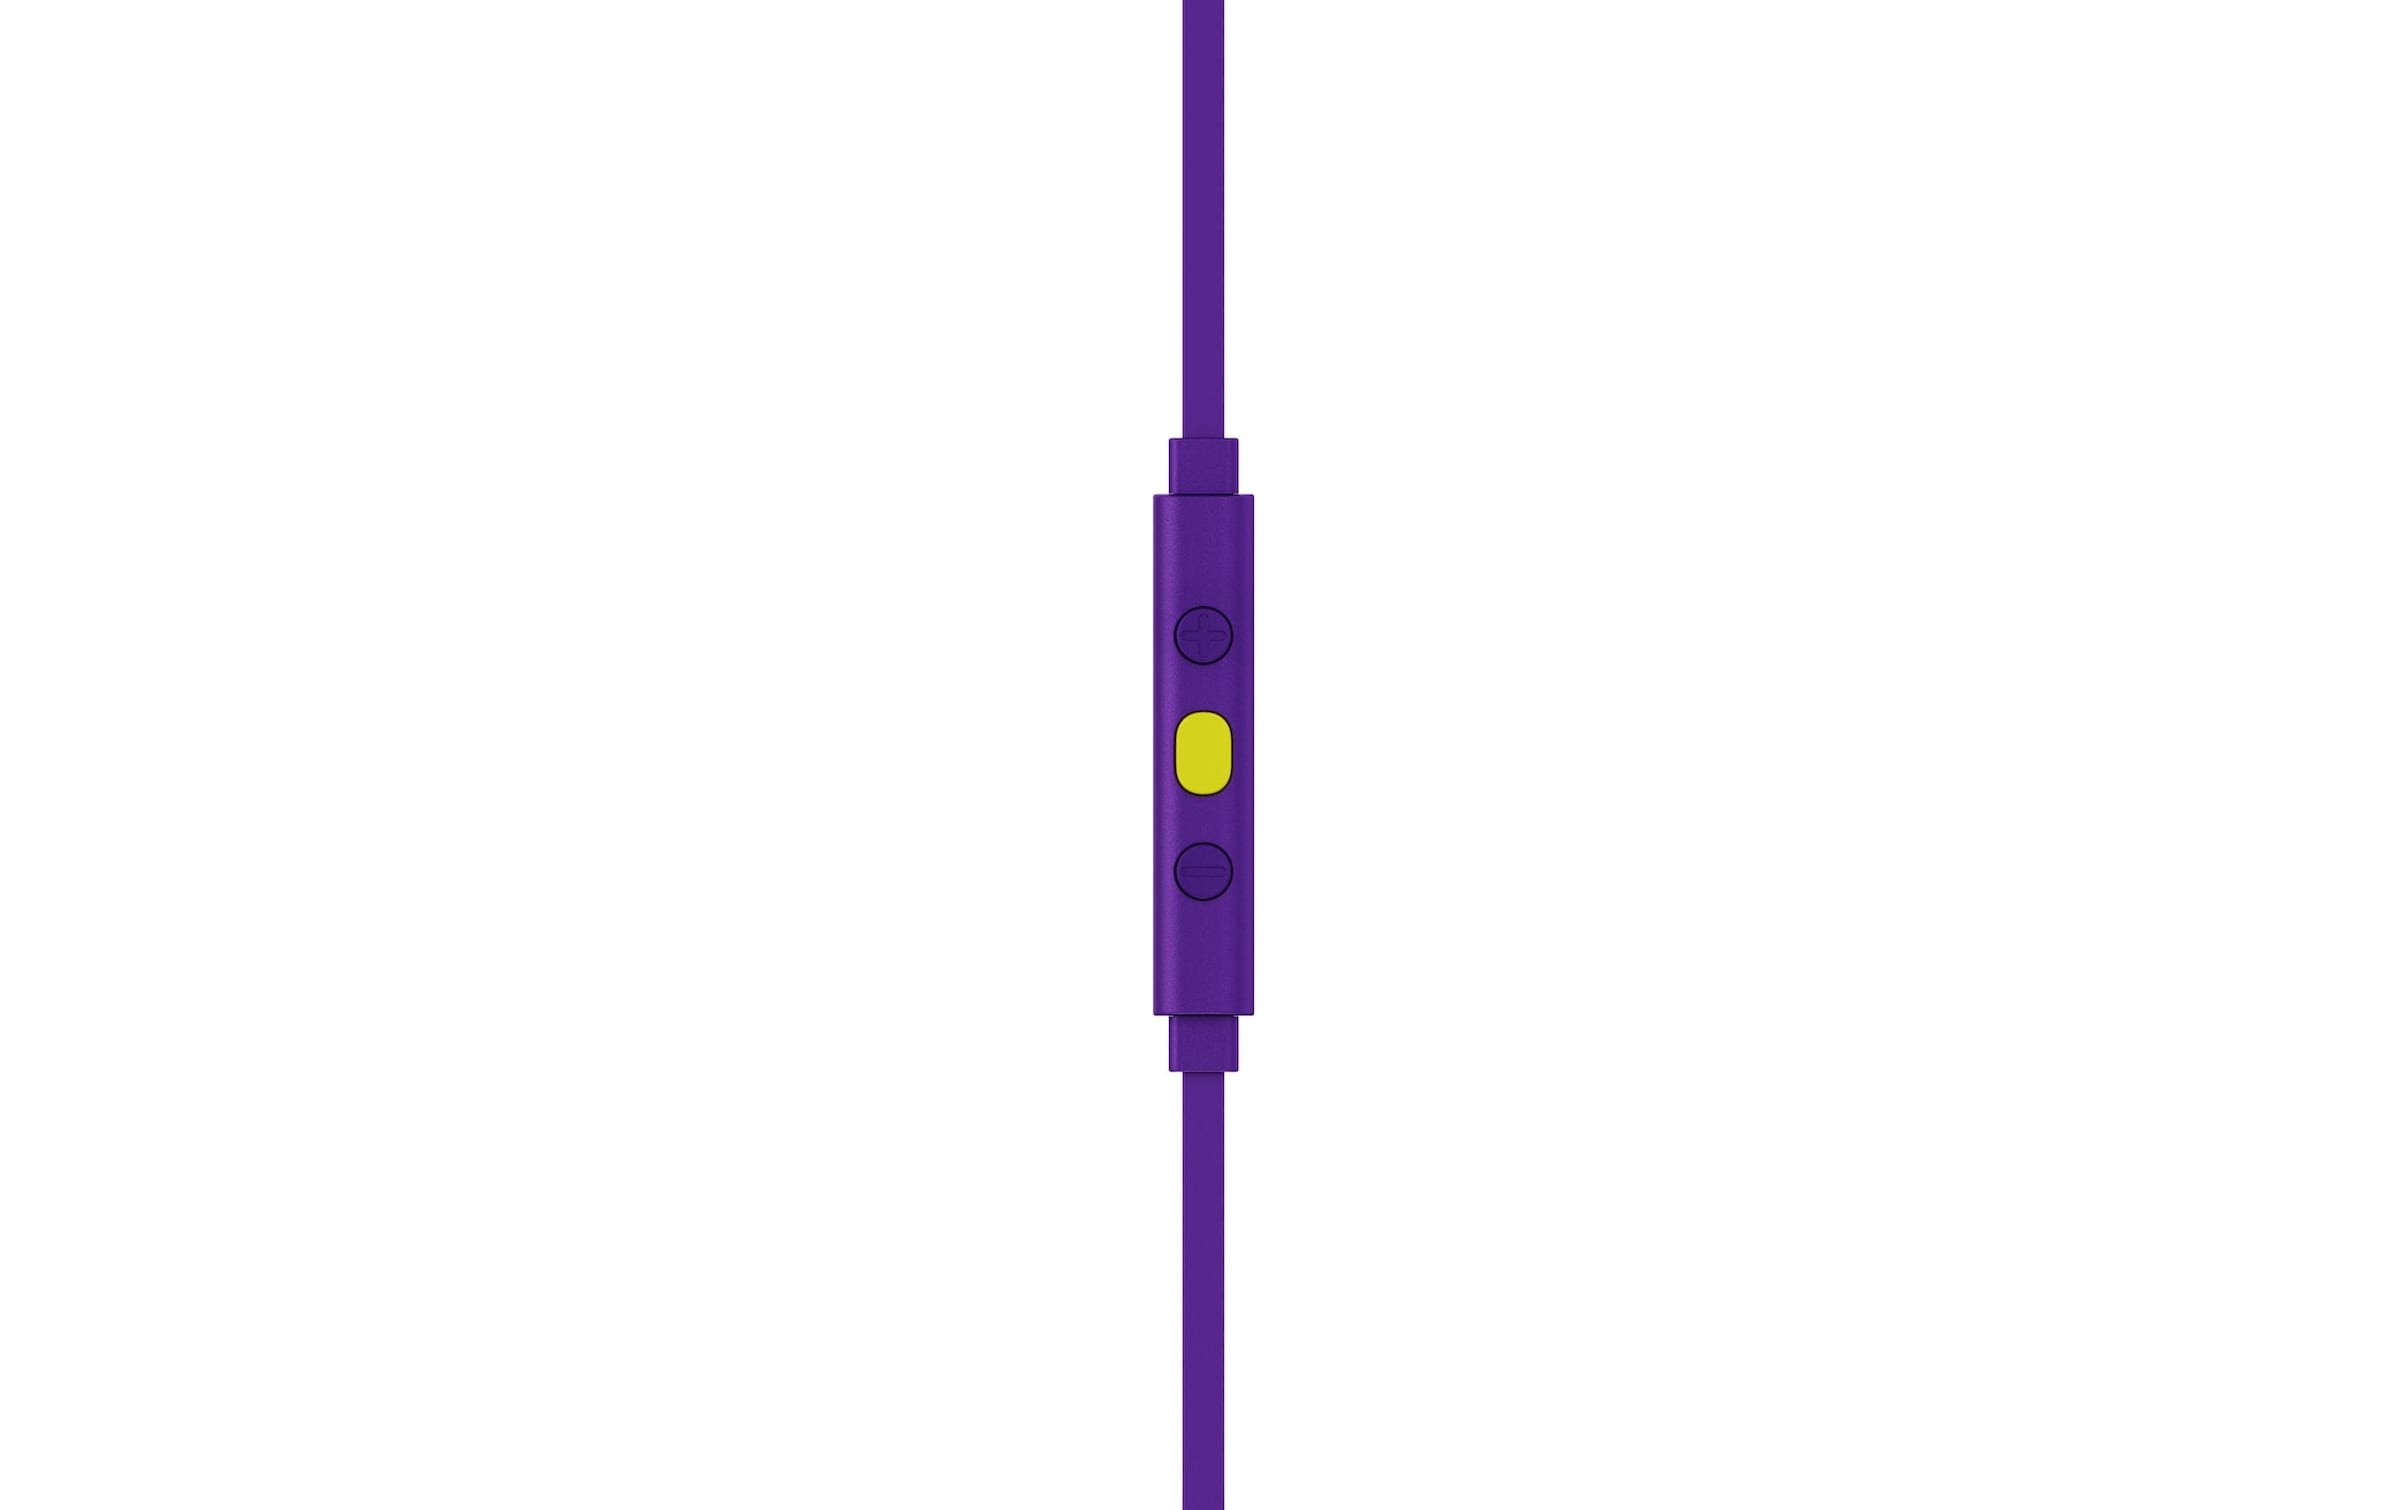 Logitech Headset »G333 Gaming Violet«